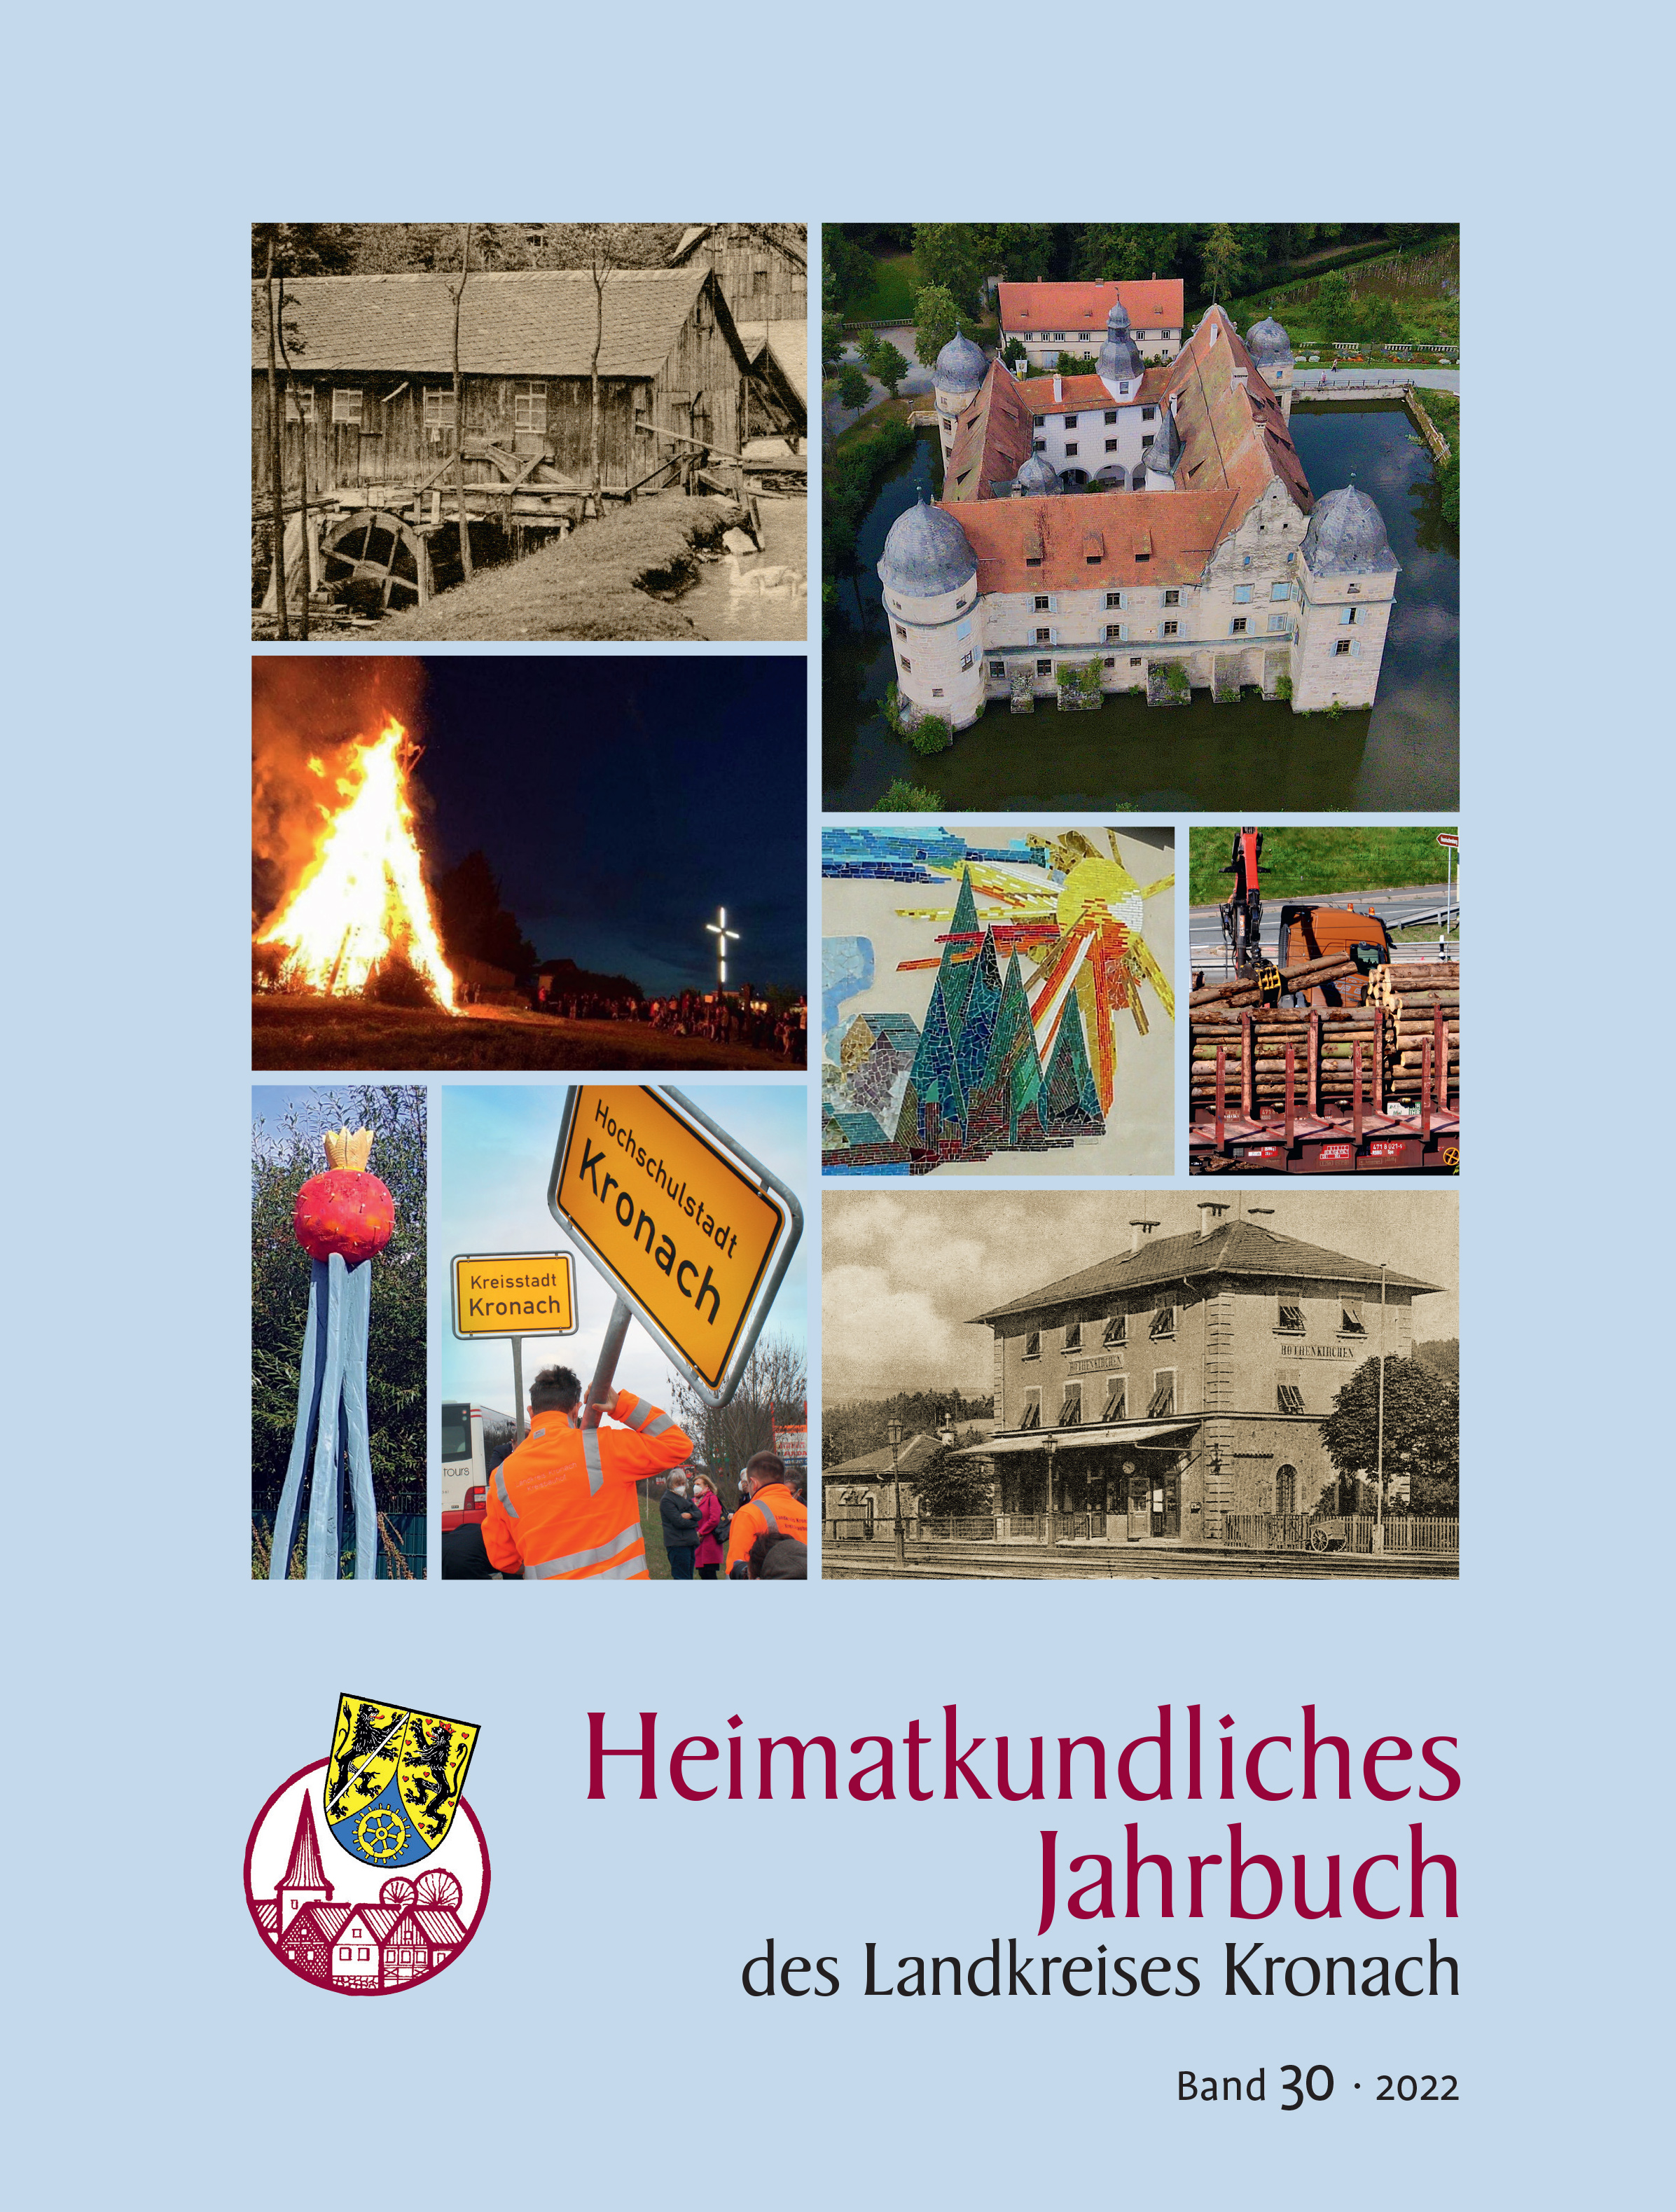 Heimatkundliches Jahrbuch Band 30/2022